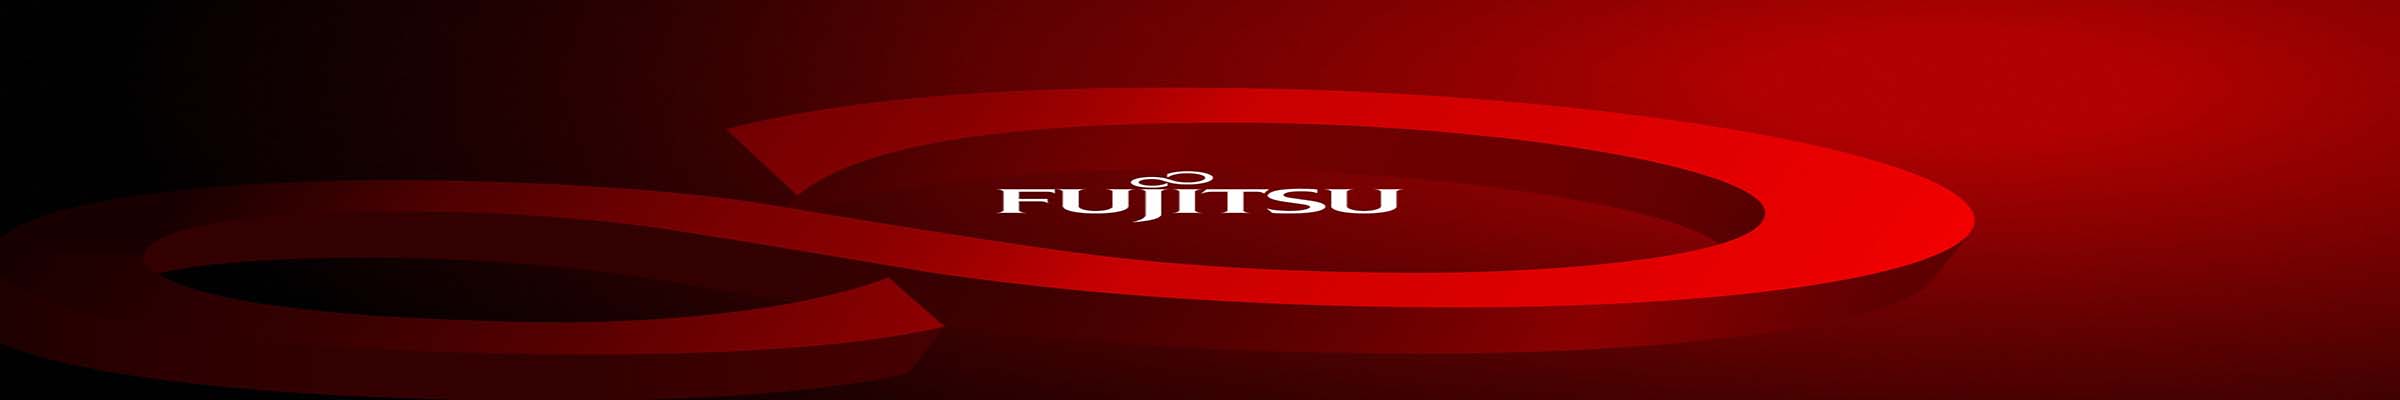 ремонт кондиционеров Fujitsu